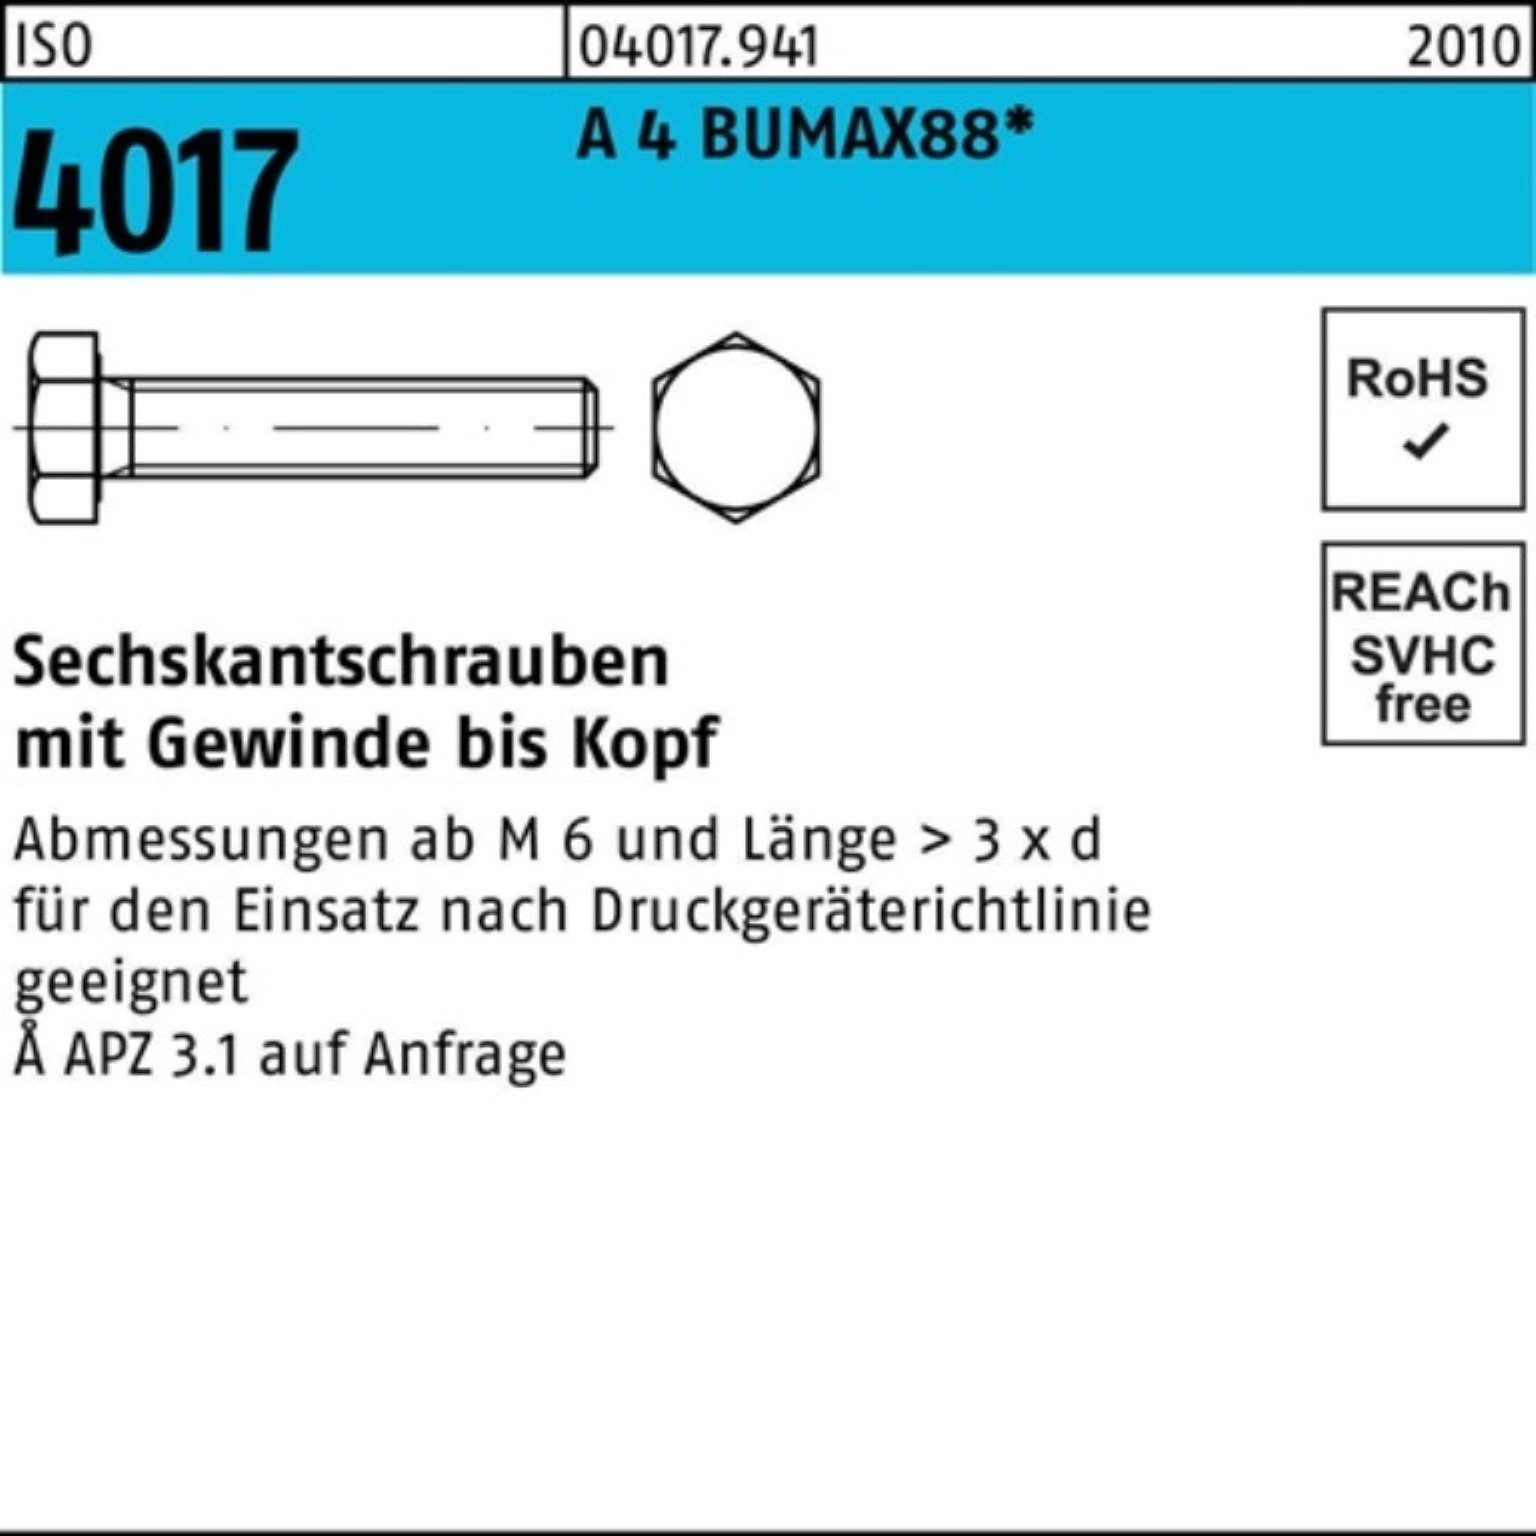 Bufab Sechskantschraube 100er Pack Sechskantschraube ISO 4017 VG M12x 50 A 4 BUMAX88 25 Stück | Schrauben